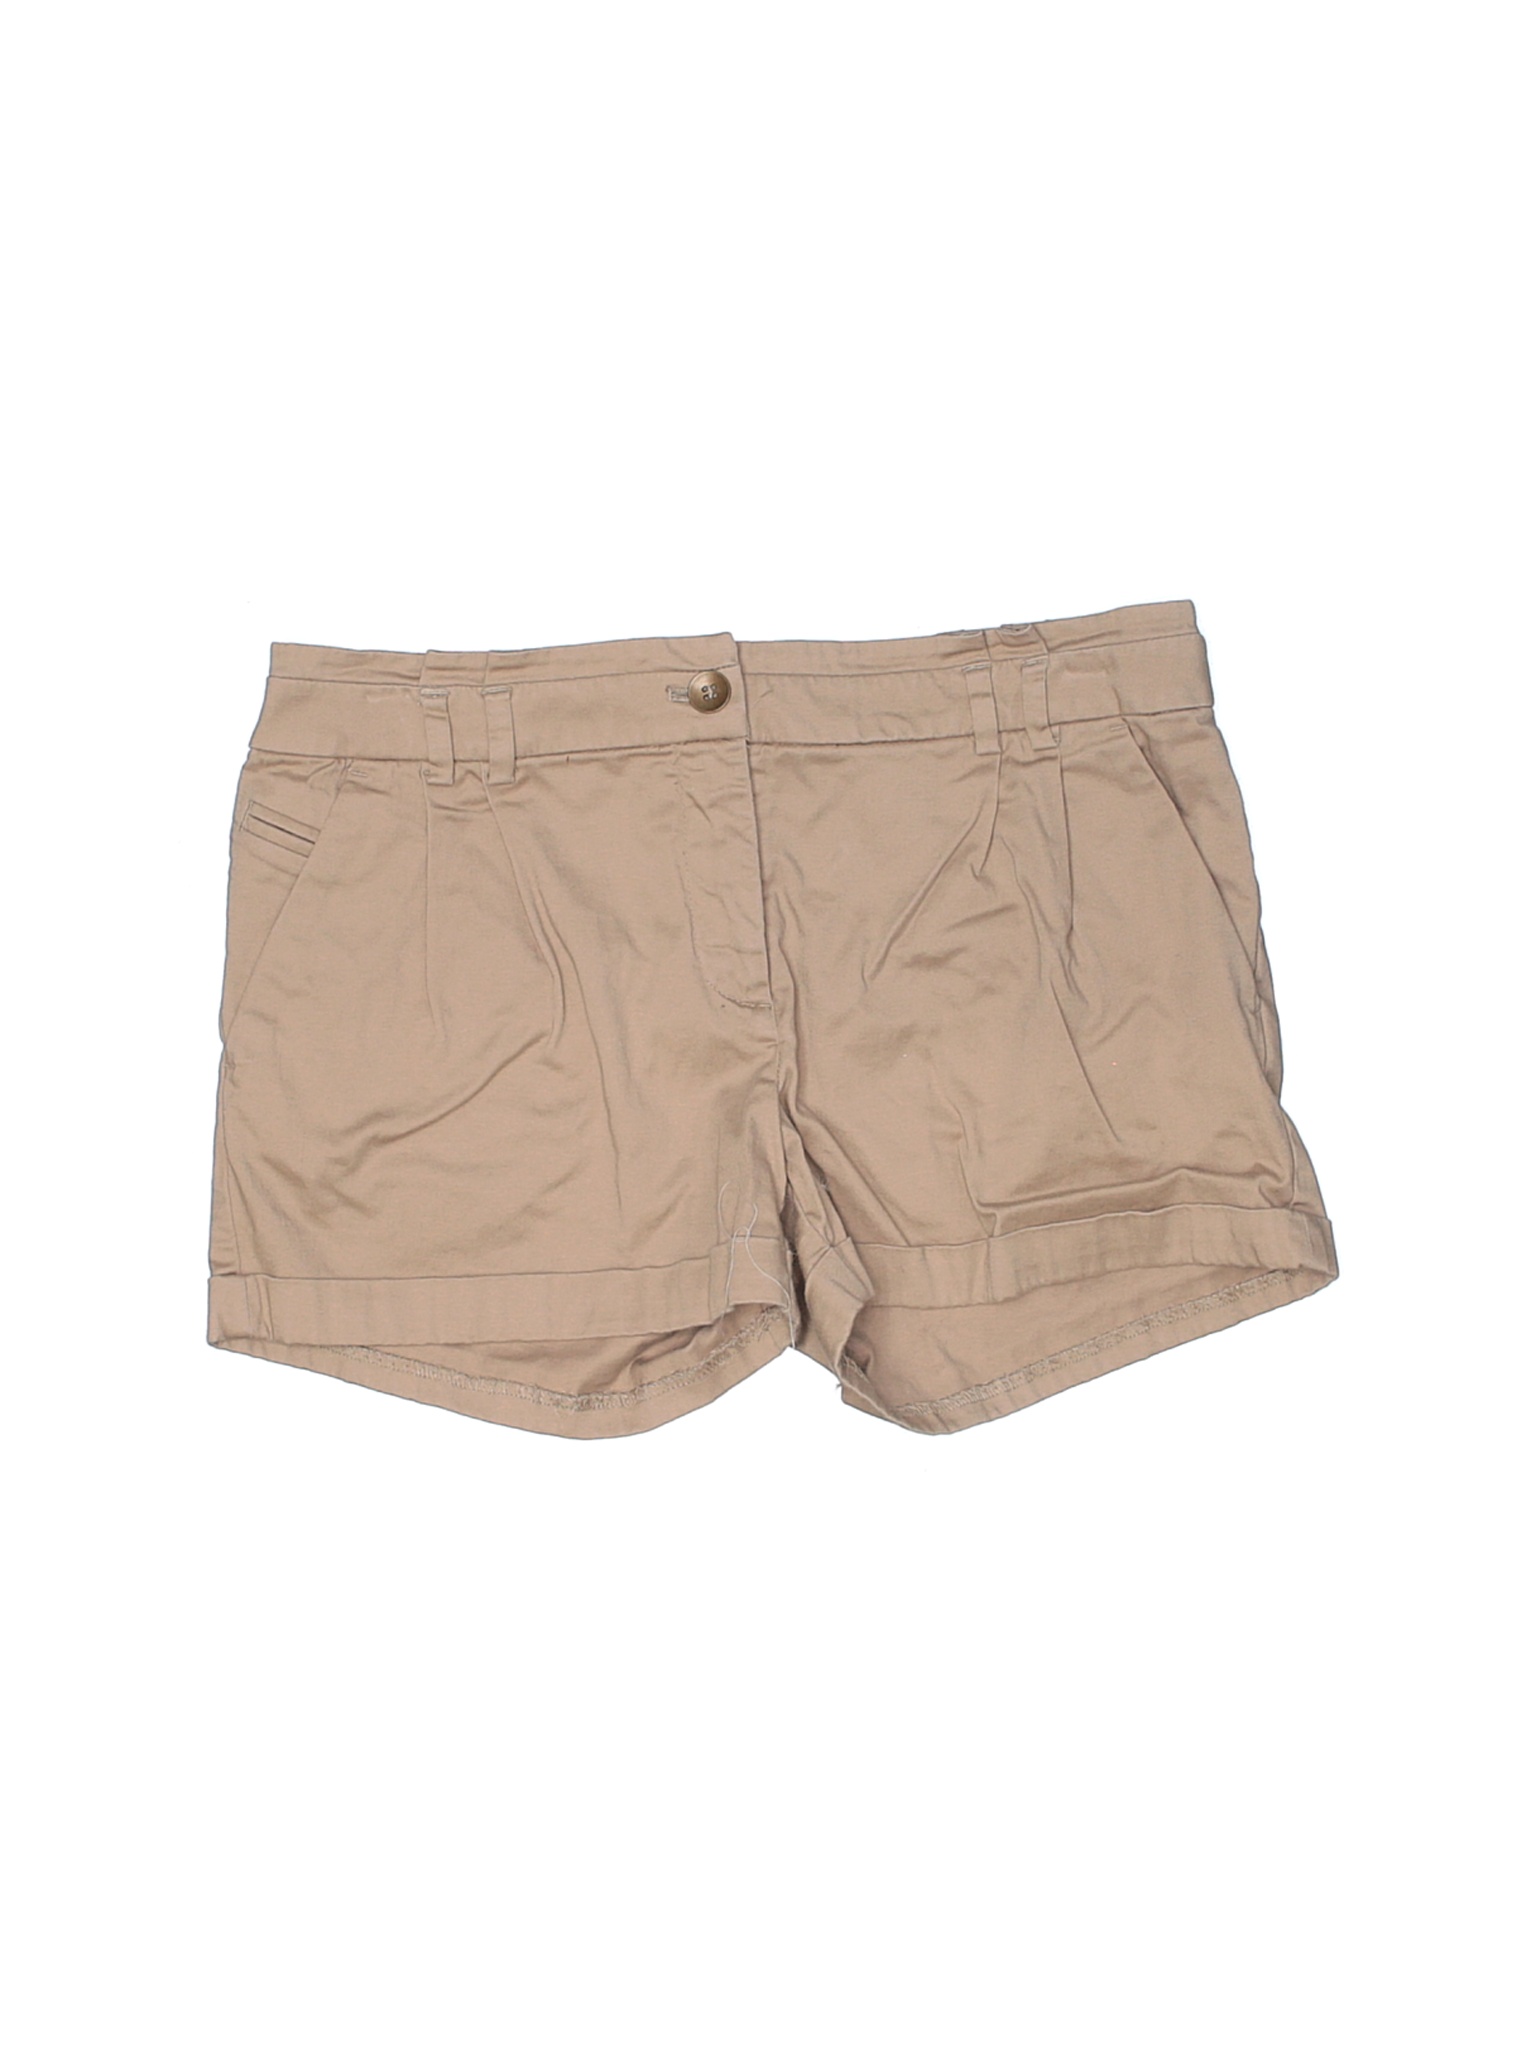 H&M Women Brown Khaki Shorts 6 | eBay